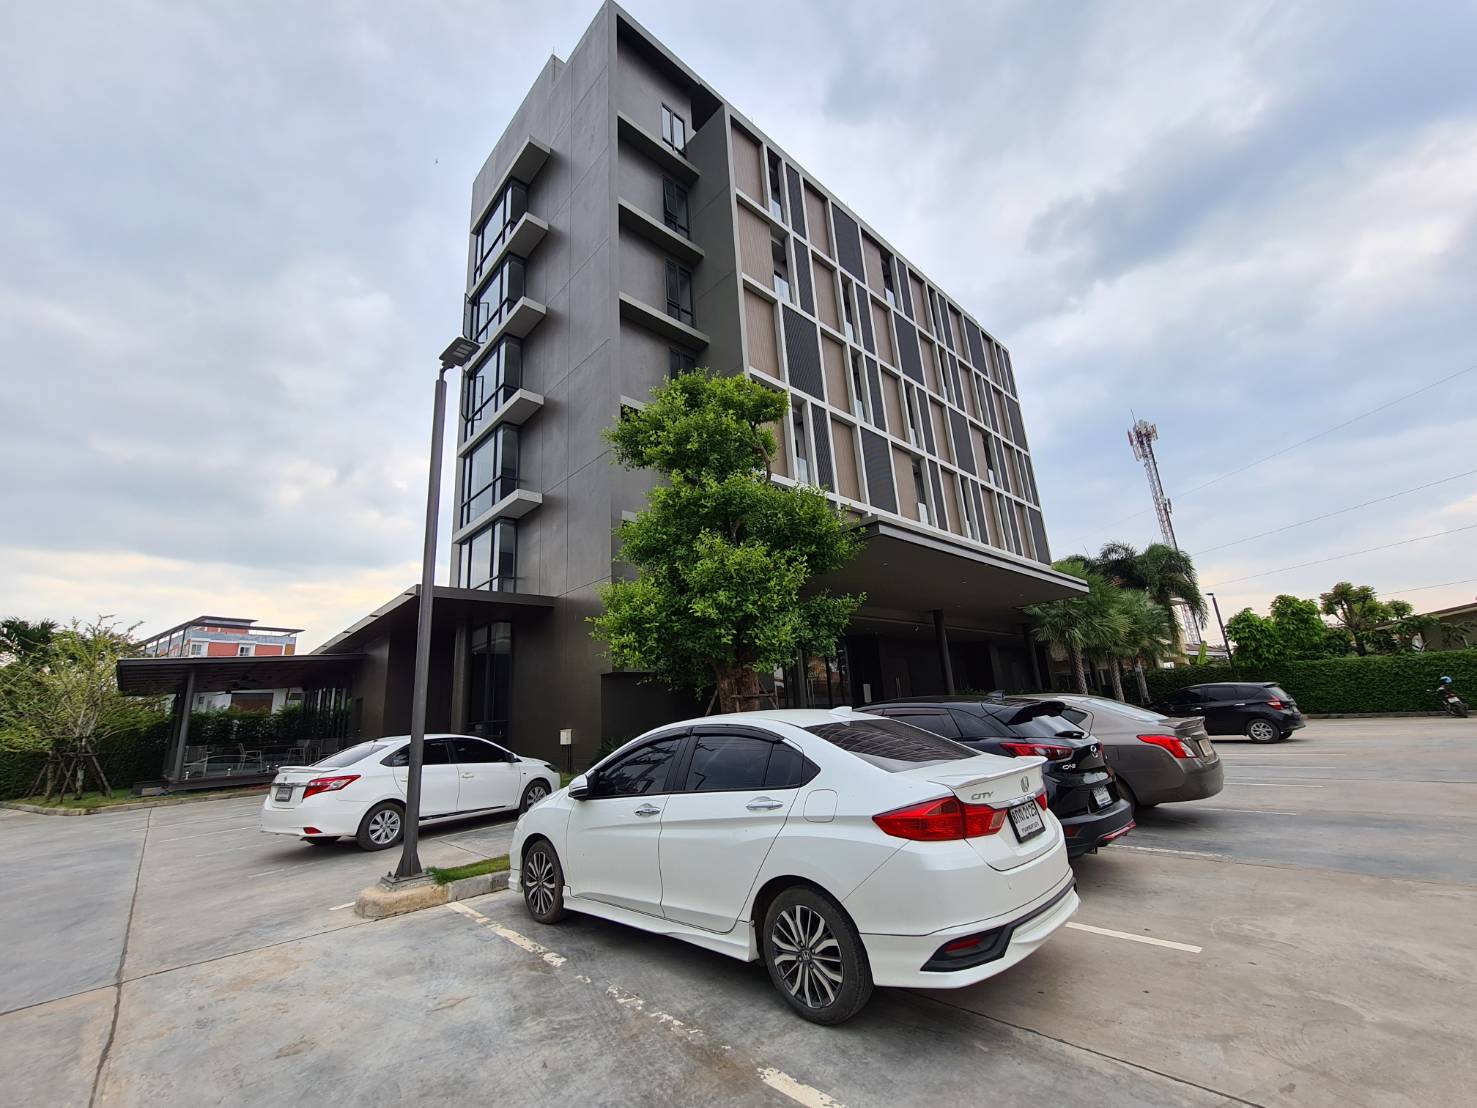 รีวิว XOTEL โรงแรมโซเทล ที่พักใหม่เมืองขอนแก่น - Pantip